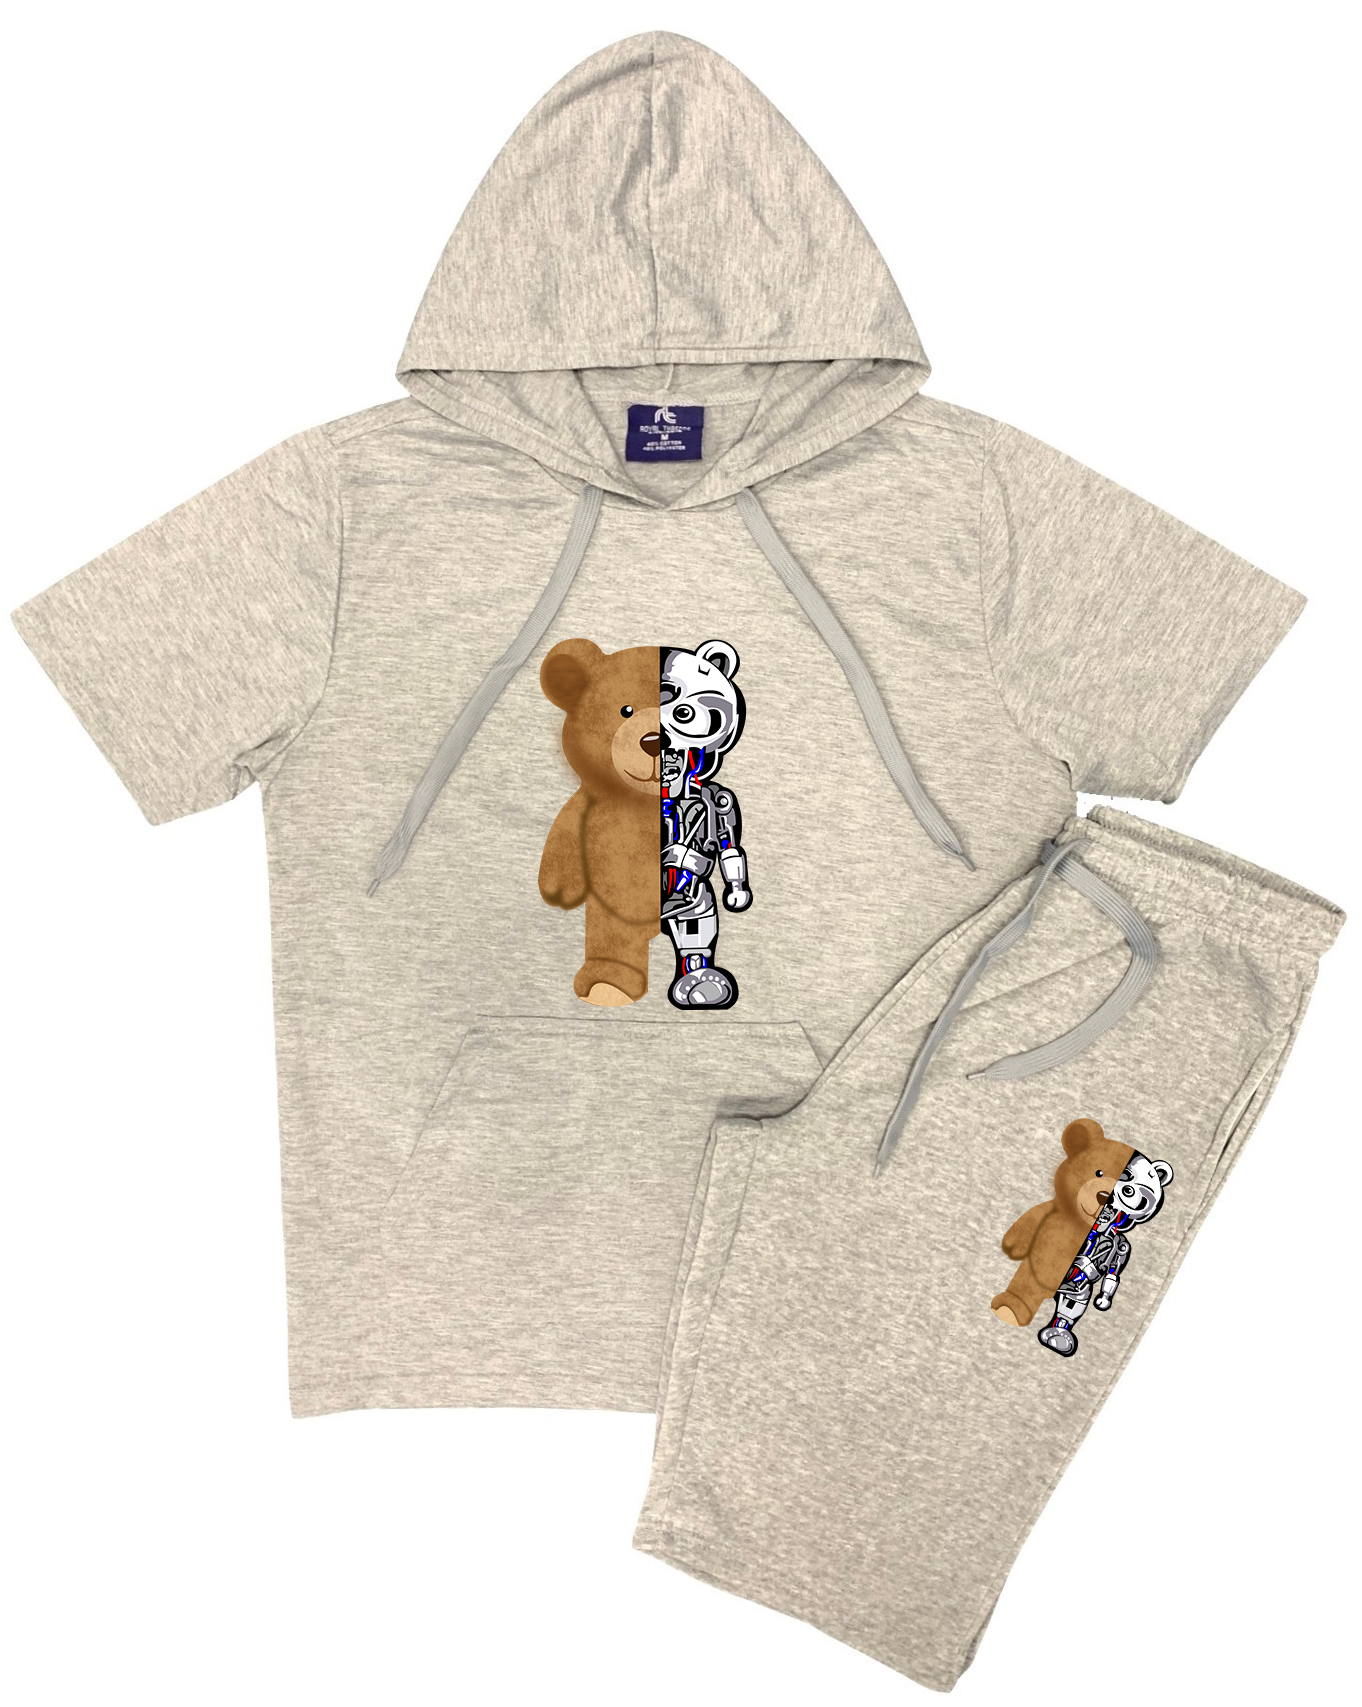 Men's 2 Piece Short Set Teddy Bear Design Summer Outfit